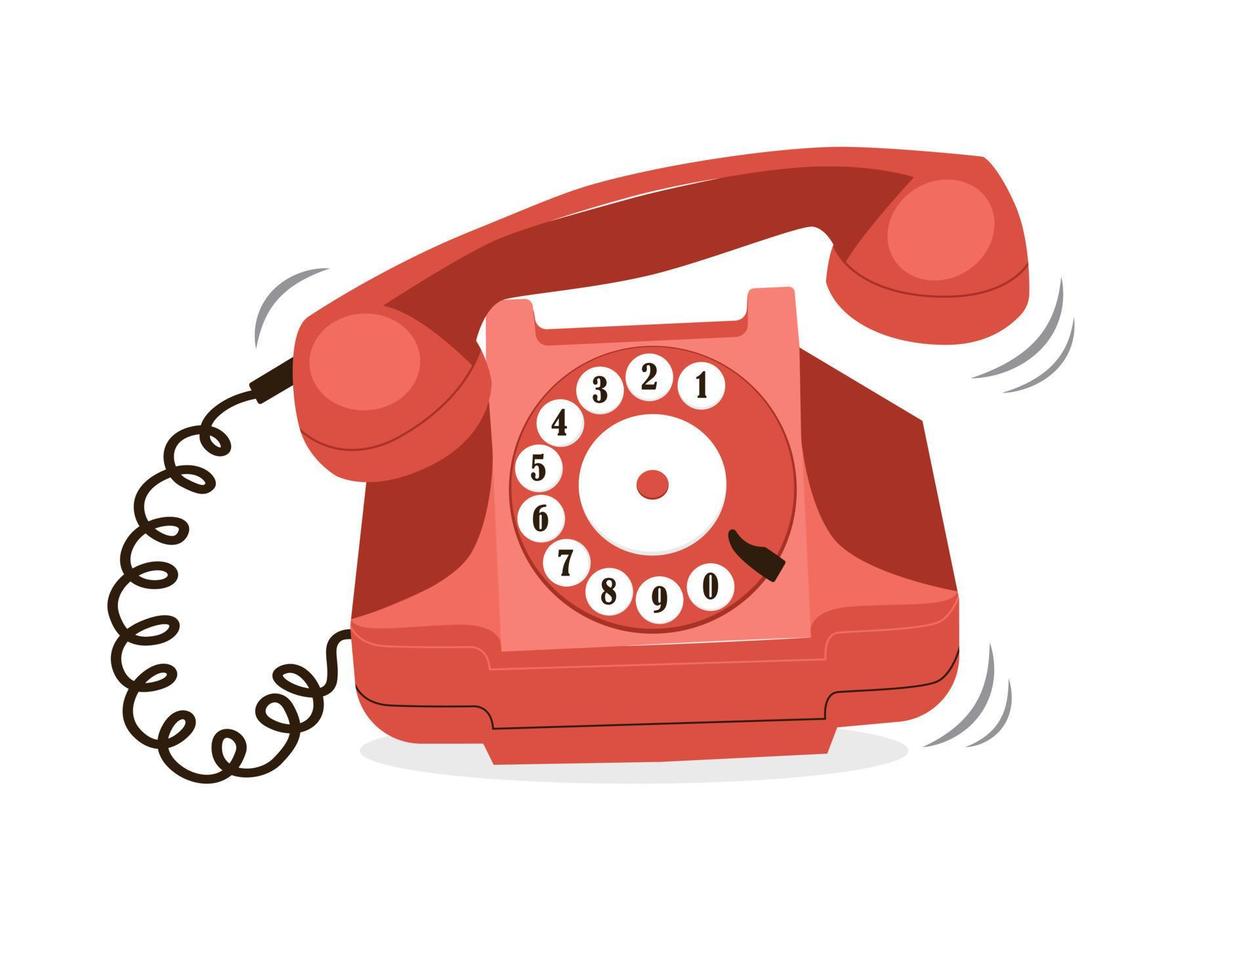 retro rode telefoon met draaischijf die belt. oude historische telefoon. vectorillustratie geïsoleerd op een witte achtergrond vector